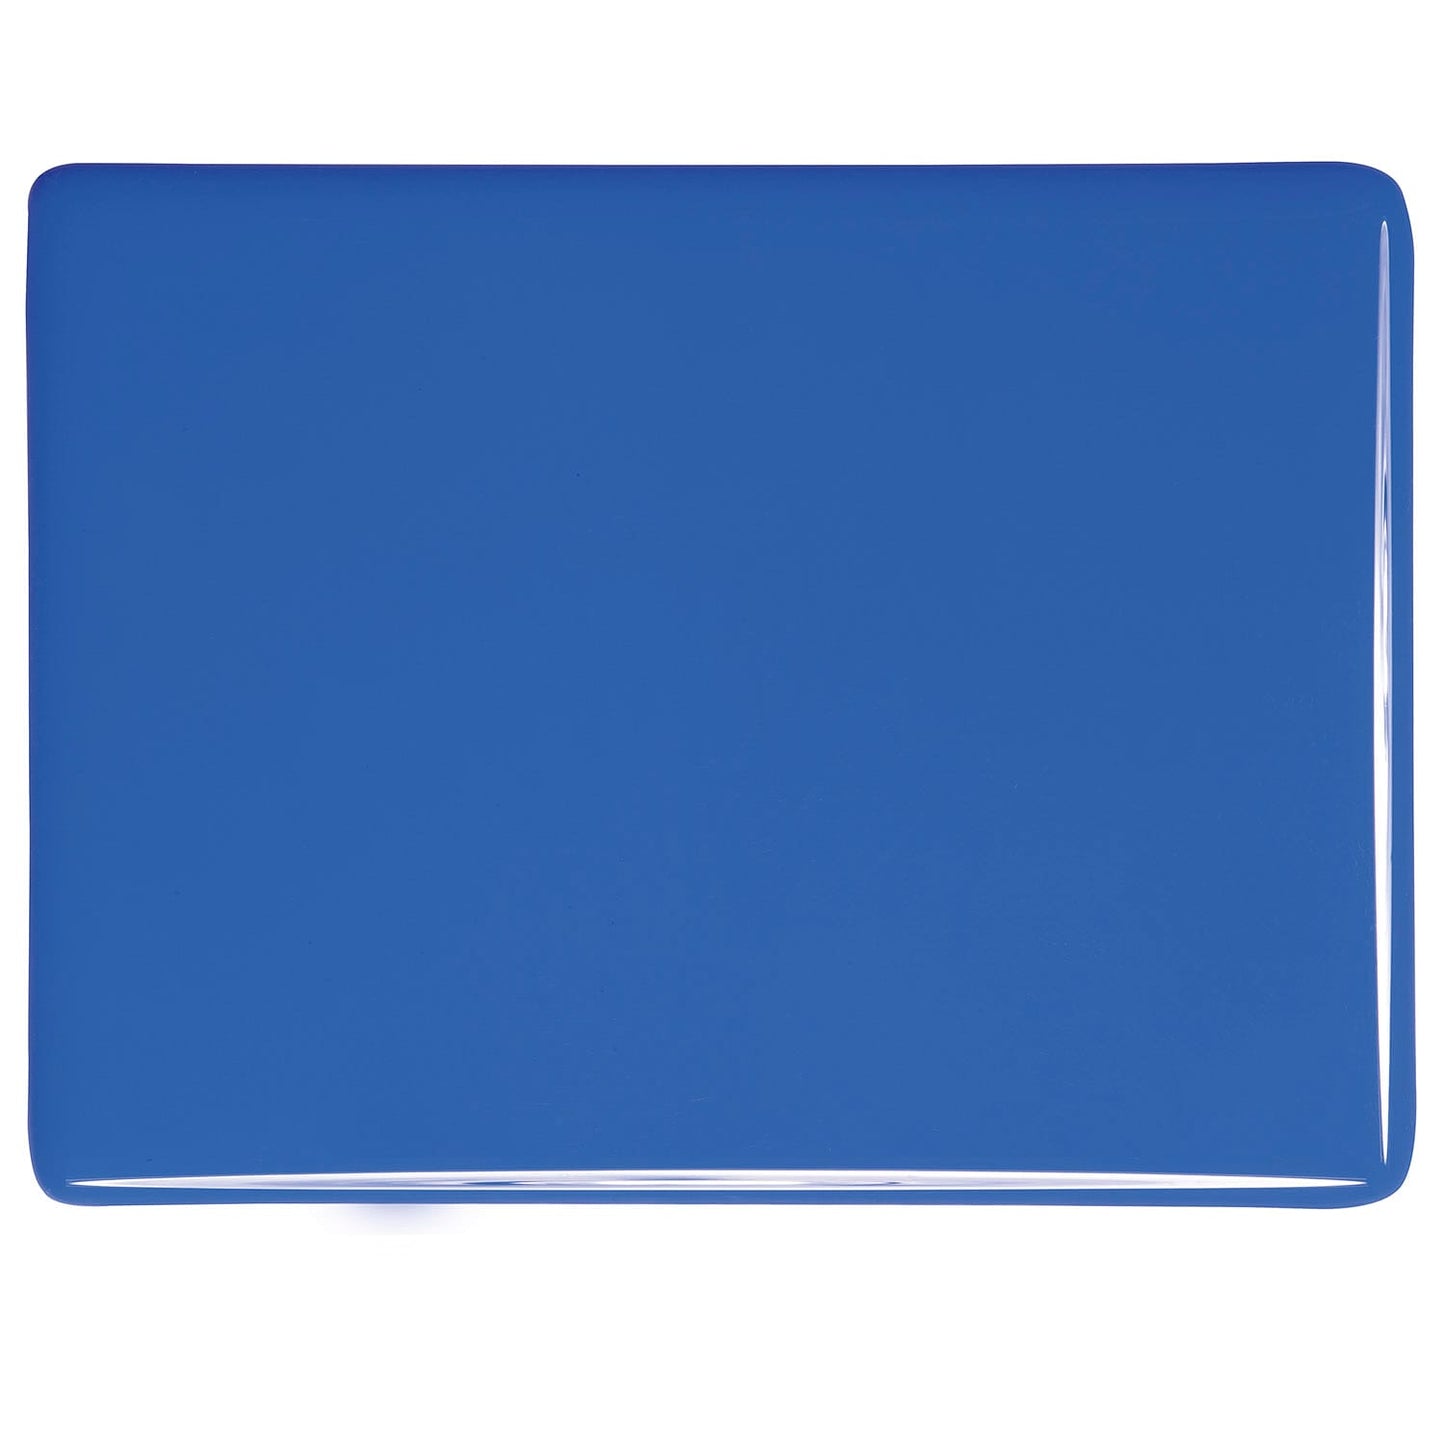 Bullseye COE90 Fusing Glass 000114 Cobalt Blue Handy Sheet